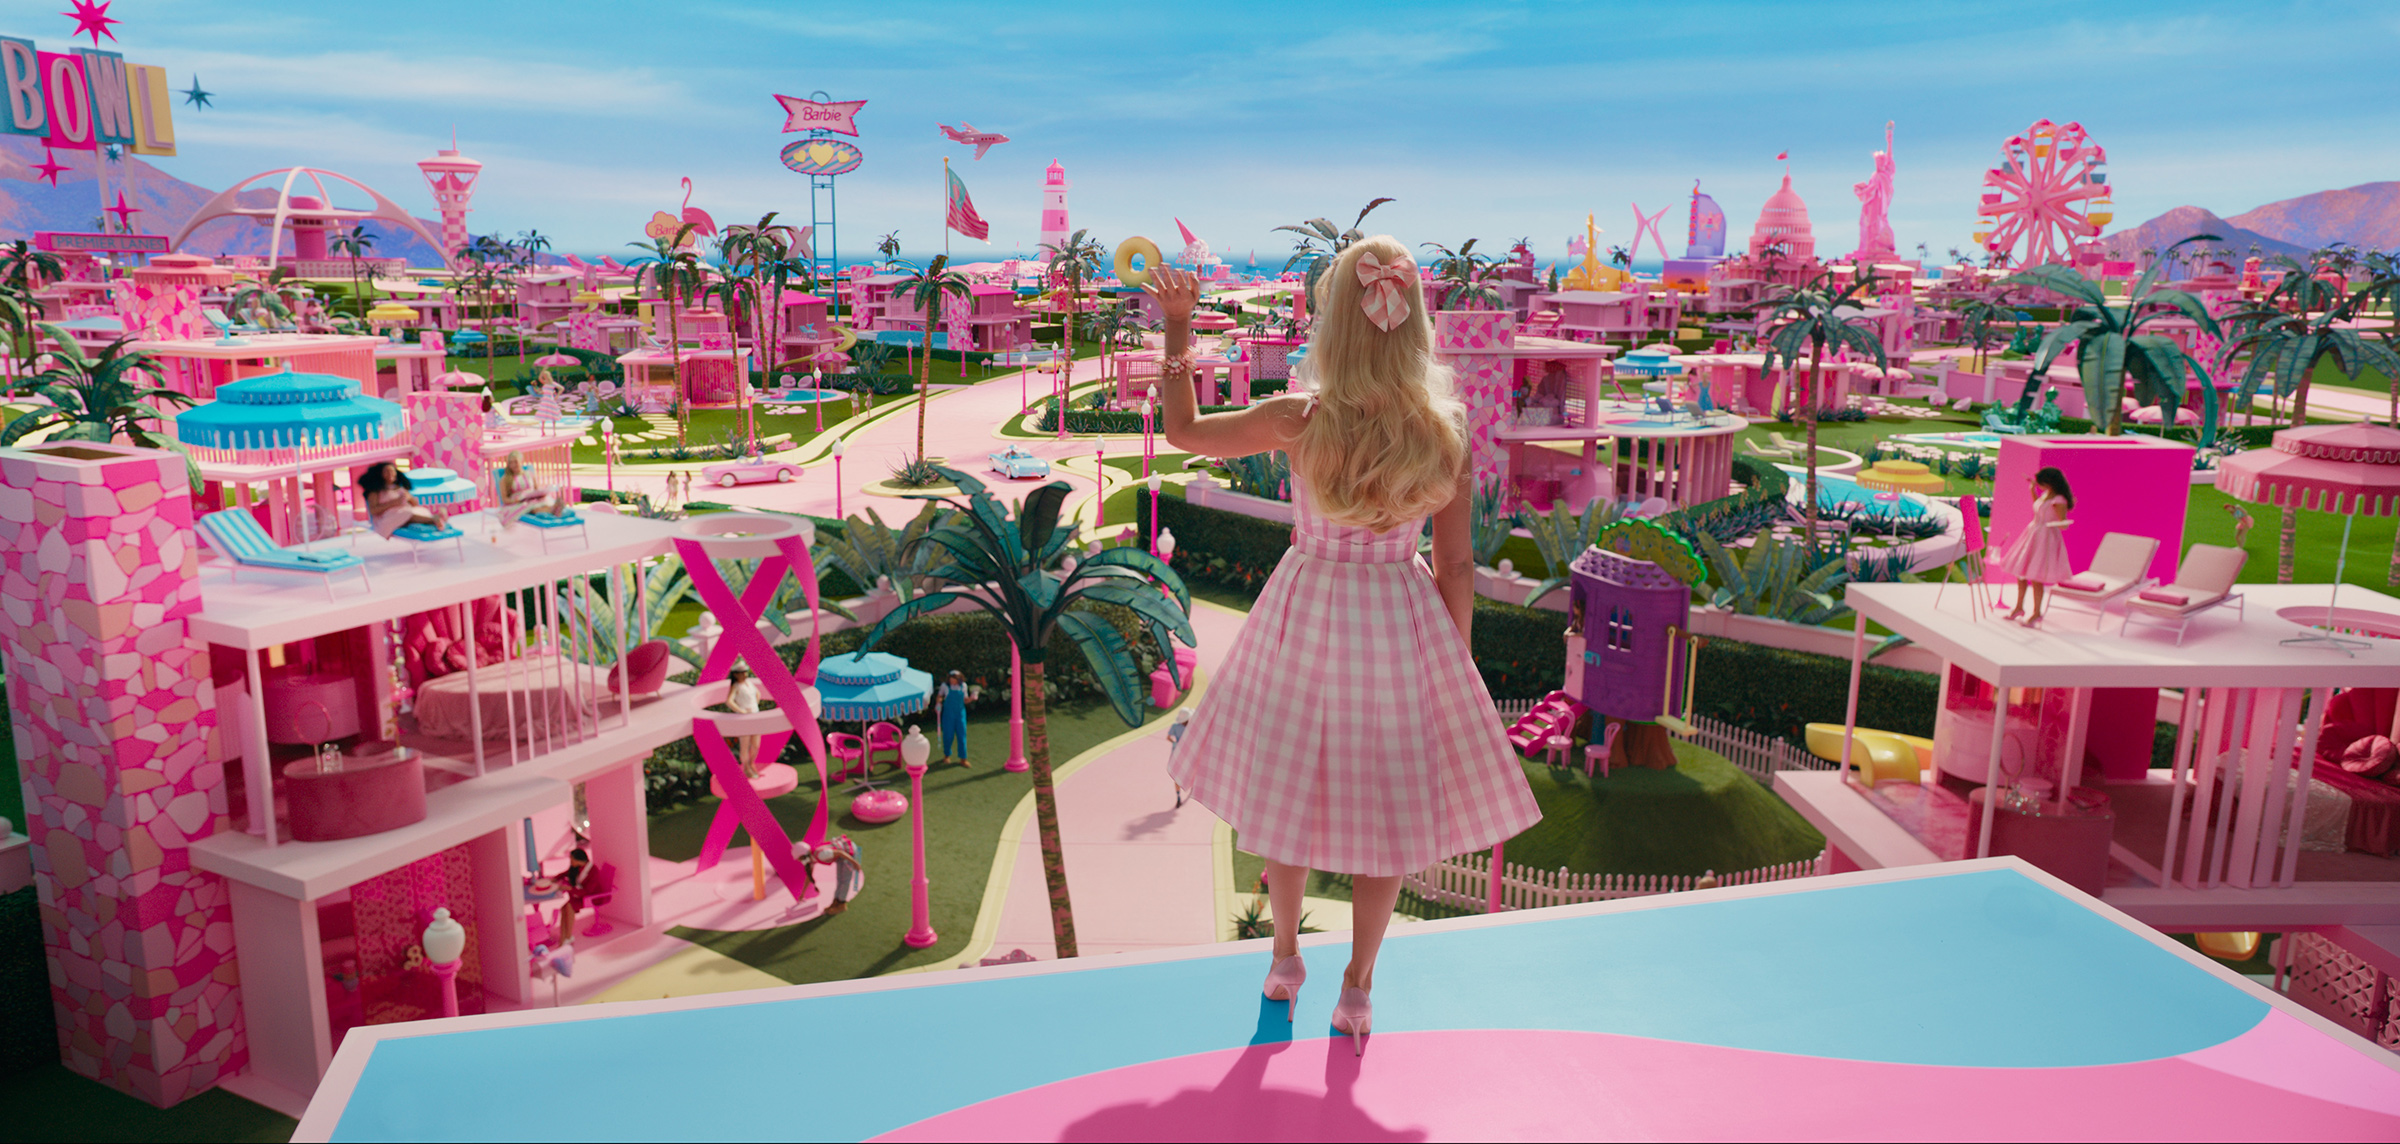 Step Inside The Barbie Dream House - Explore The Fuchsia Fantasy